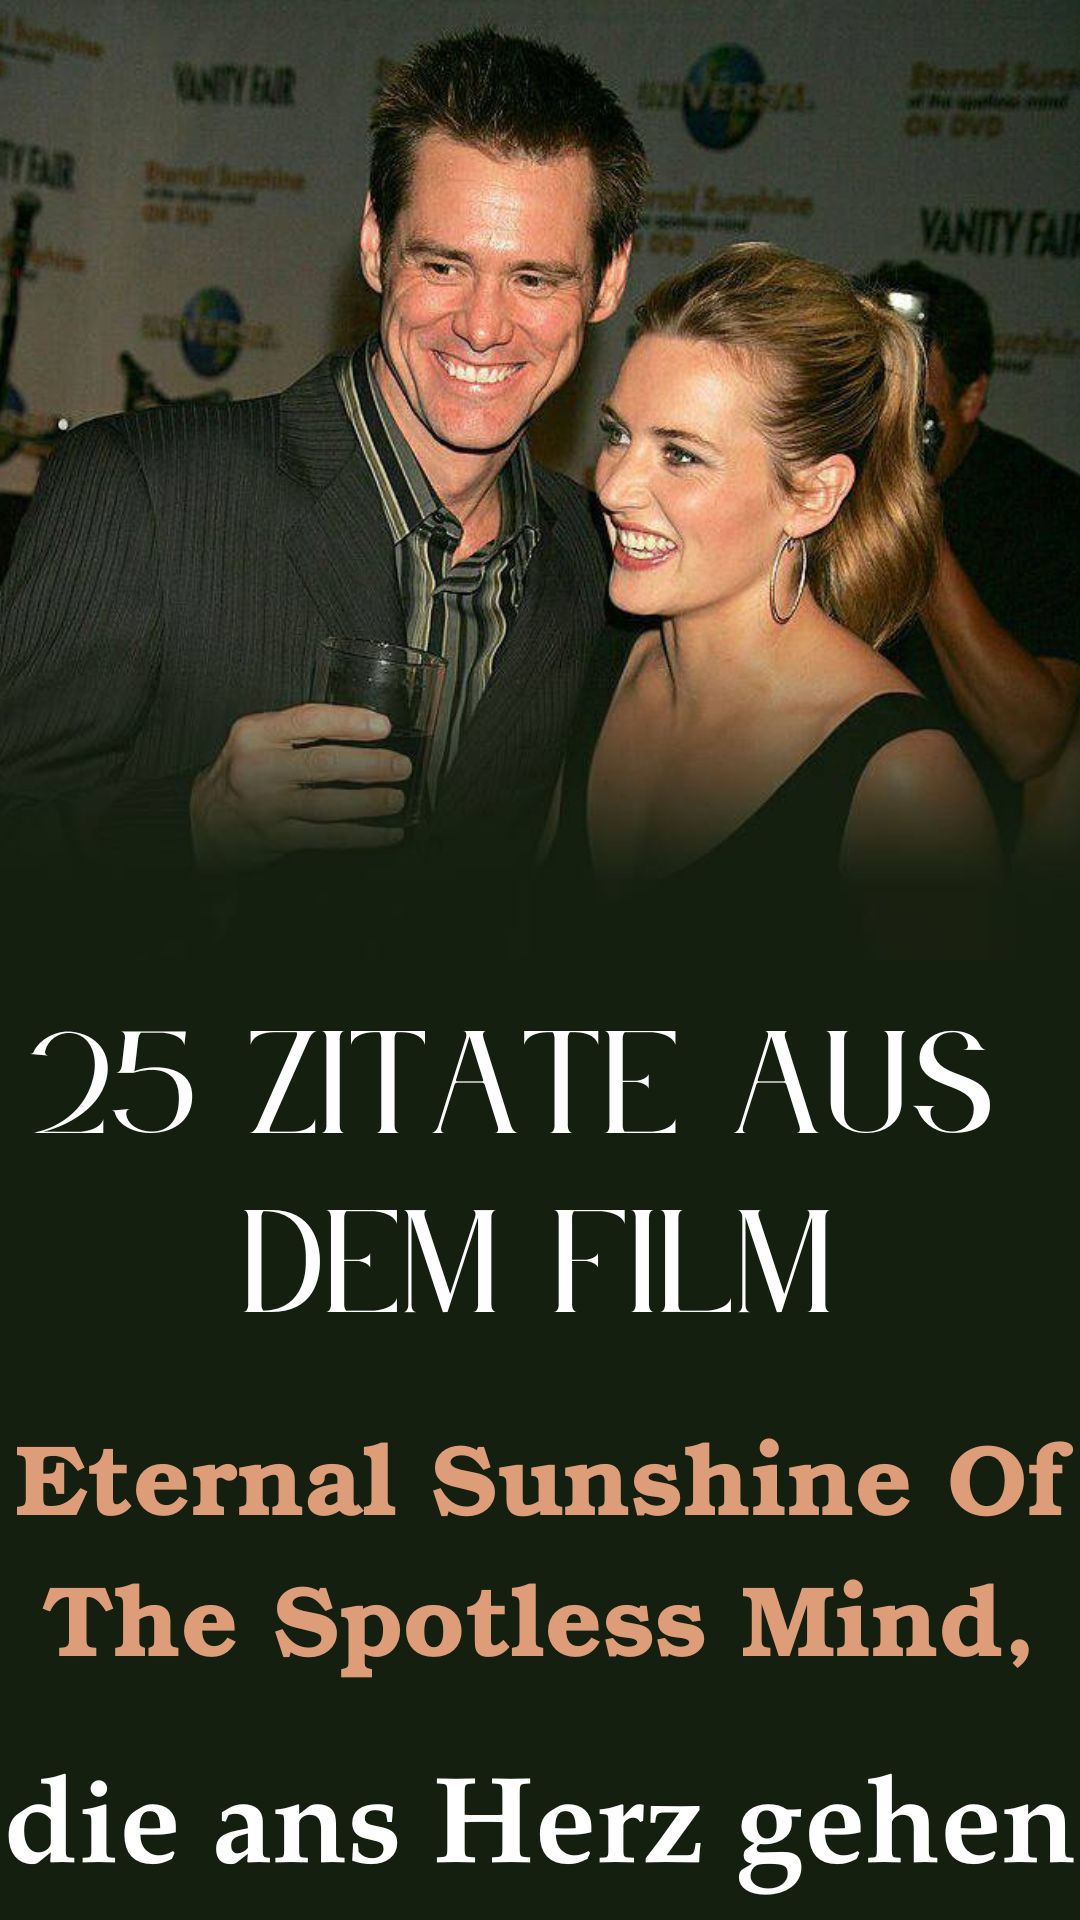 25-Zitate-aus-dem-Film-Eternal-Sunshine-Of-The-Spotless-Mind-die-ans-Herz-gehen